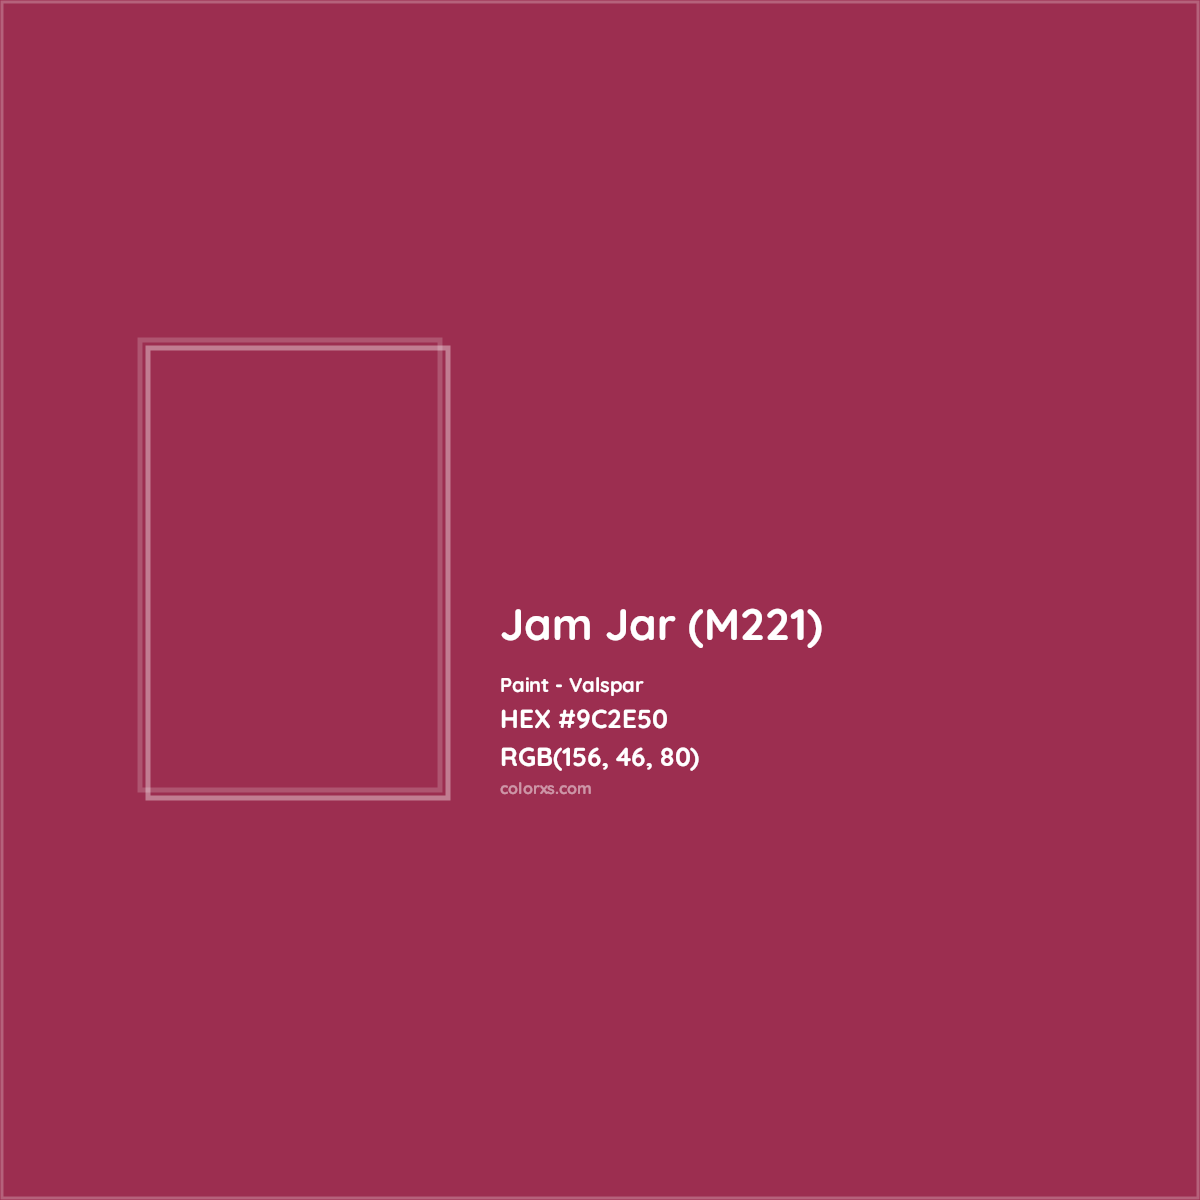 HEX #9C2E50 Jam Jar (M221) Paint Valspar - Color Code